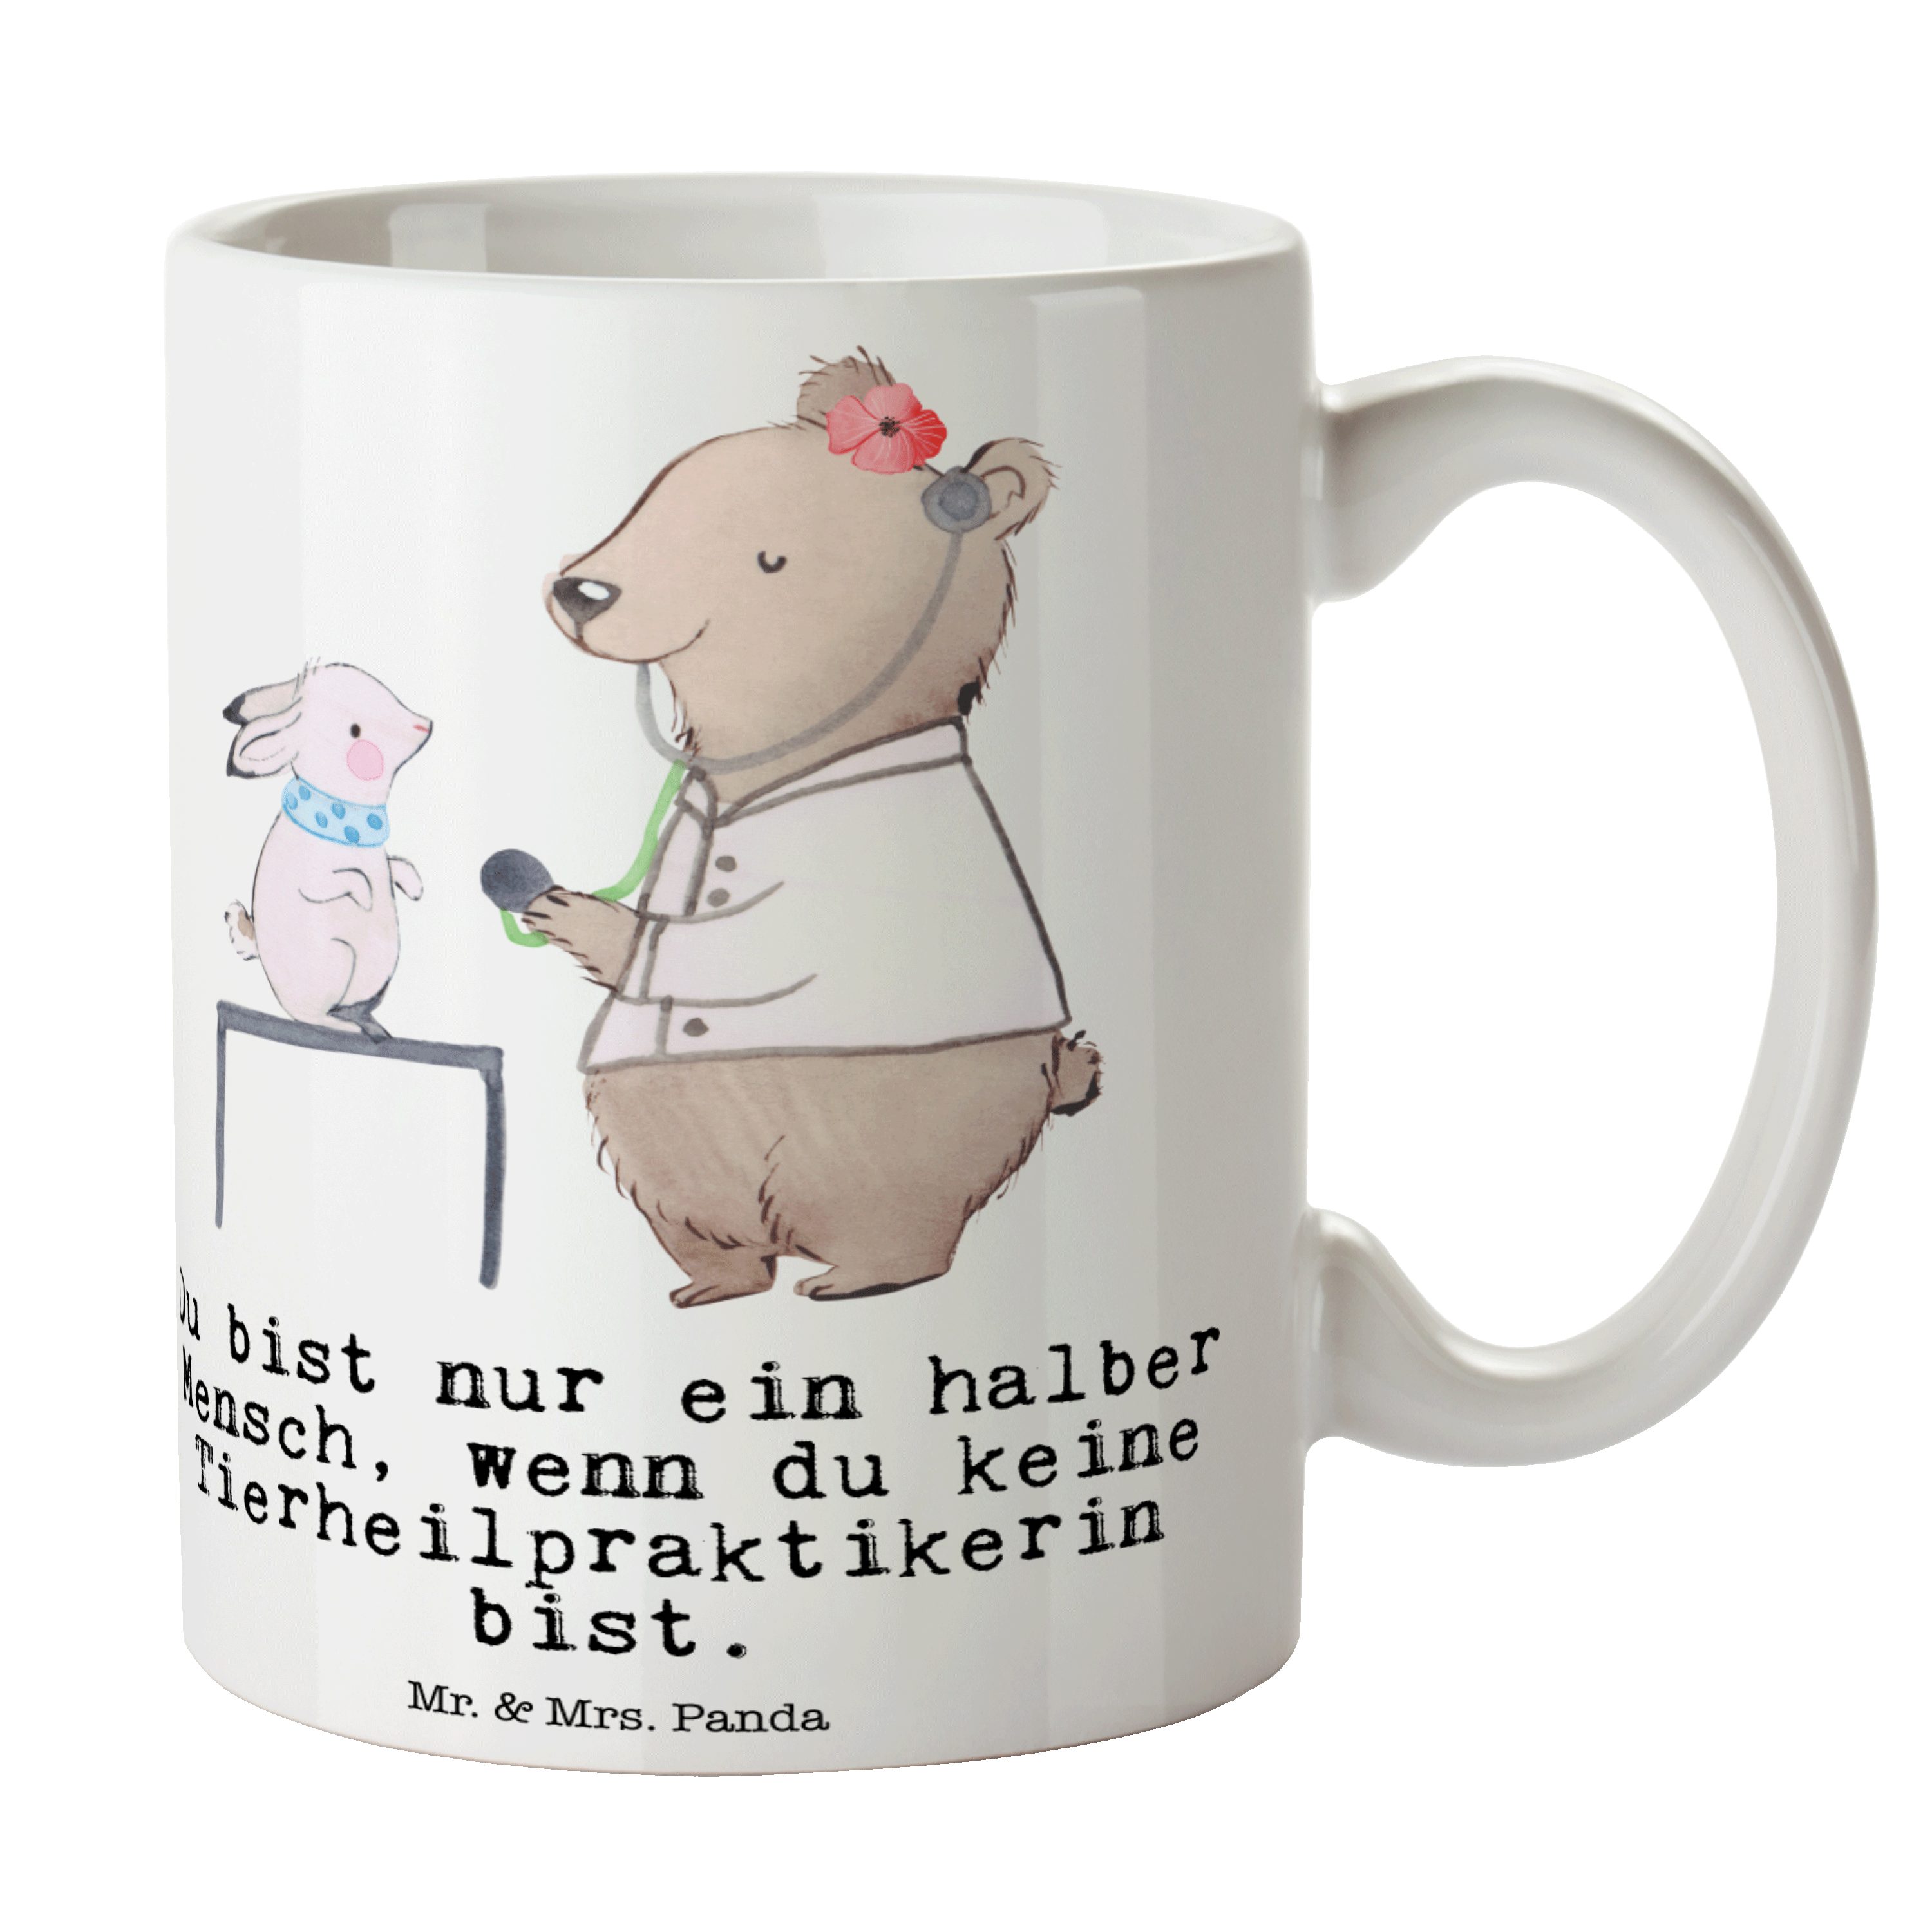 Mr. & Mrs. Panda Tasse Tierheilpraktikerin mit Herz - Weiß - Geschenk, Teetasse, Kaffeebeche, Keramik